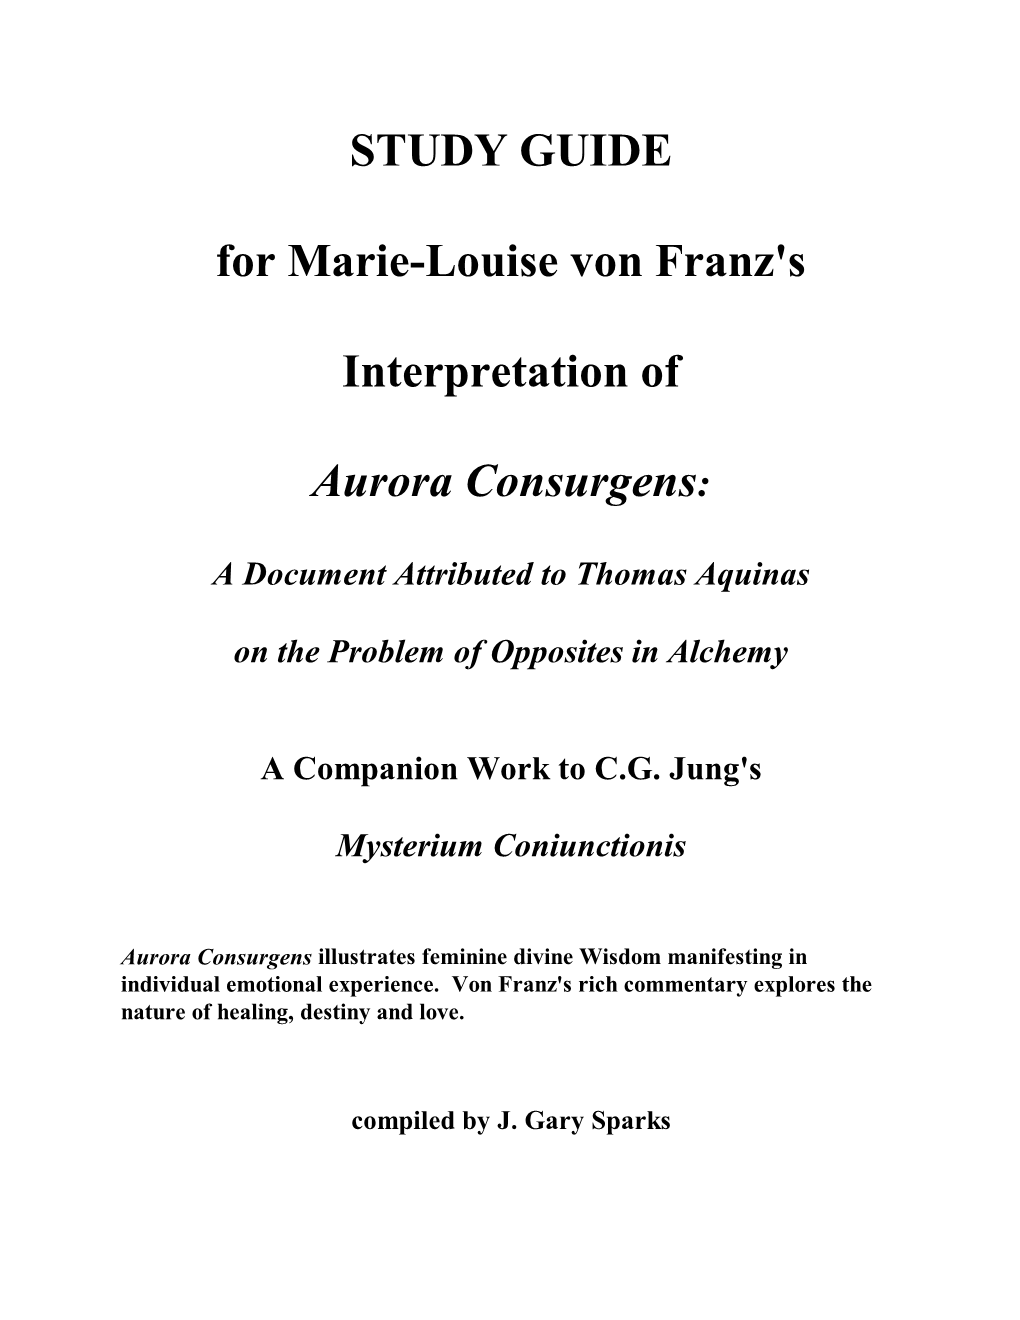 STUDY GUIDE for Marie-Louise Von Franz's Interpretation of Aurora Consurgens